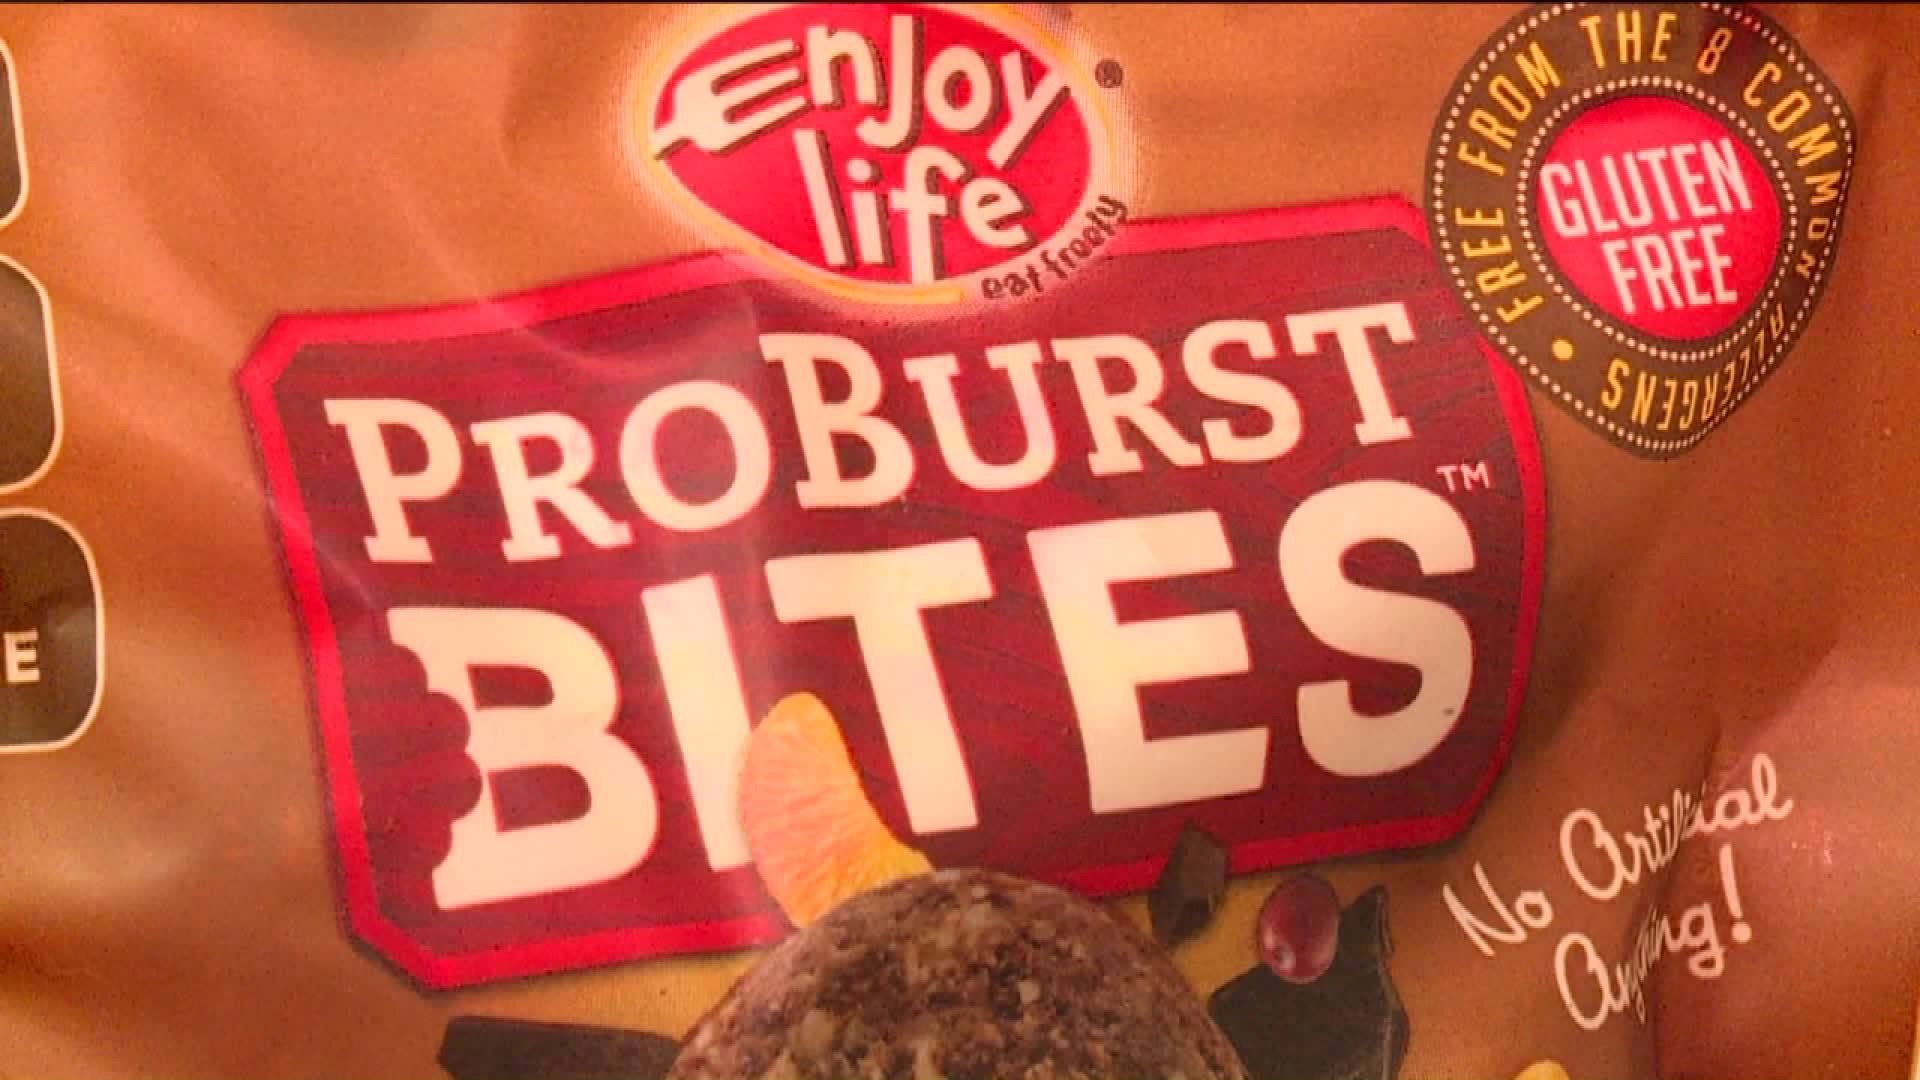 Yucktober Taste Test: Proburst Bites